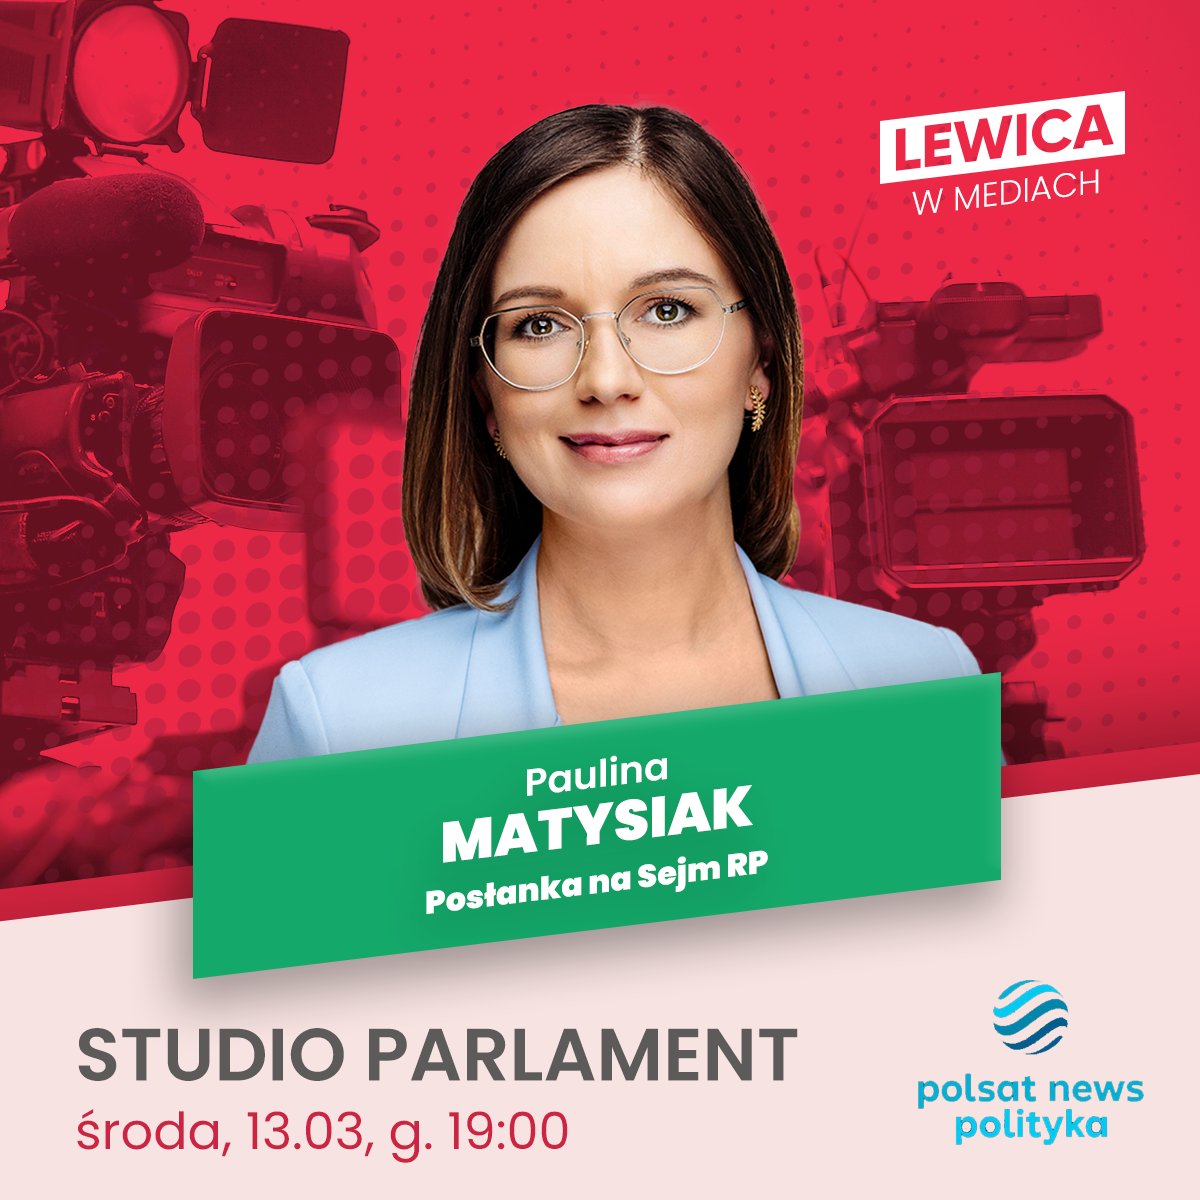 📺 Posłanka @PolaMatysiak dziś o 19:00 będzie gościnią programu #StudioParlament w @polsat_news_pol 

#LewicaWMediach